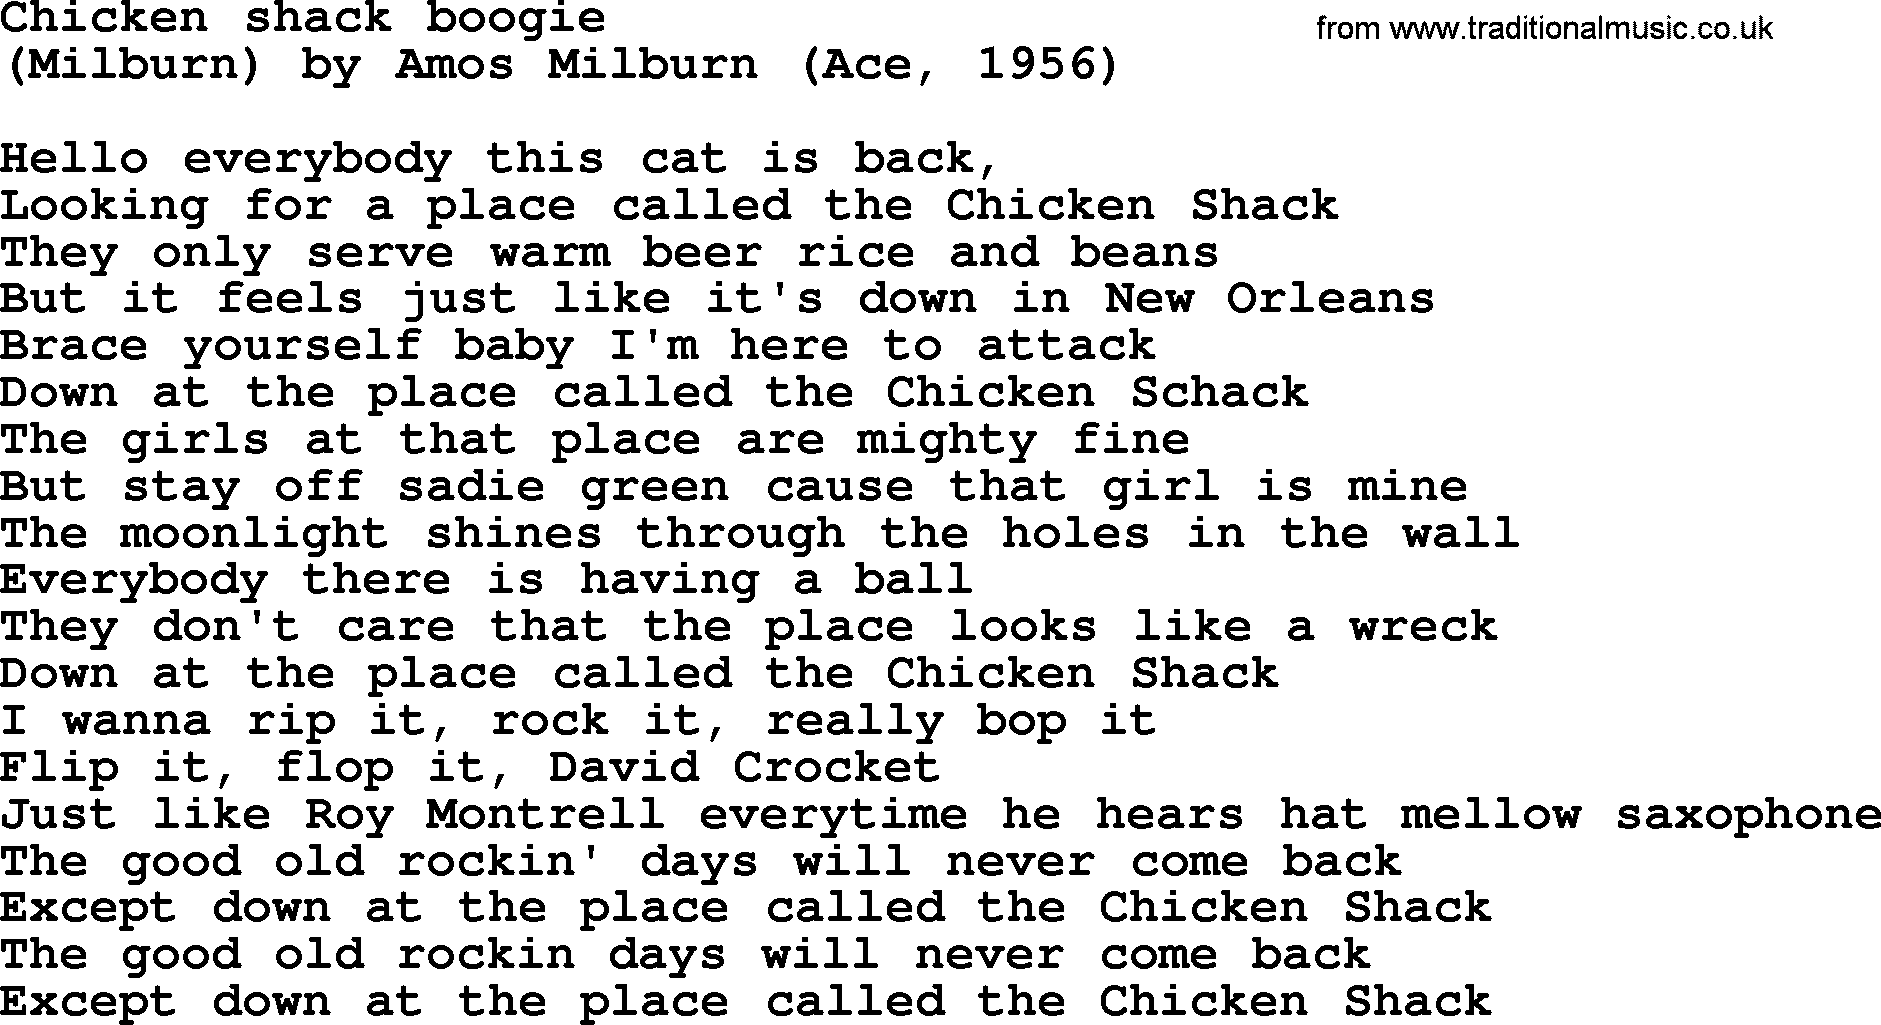 Bruce Springsteen song: Chicken Shack Boogie lyrics